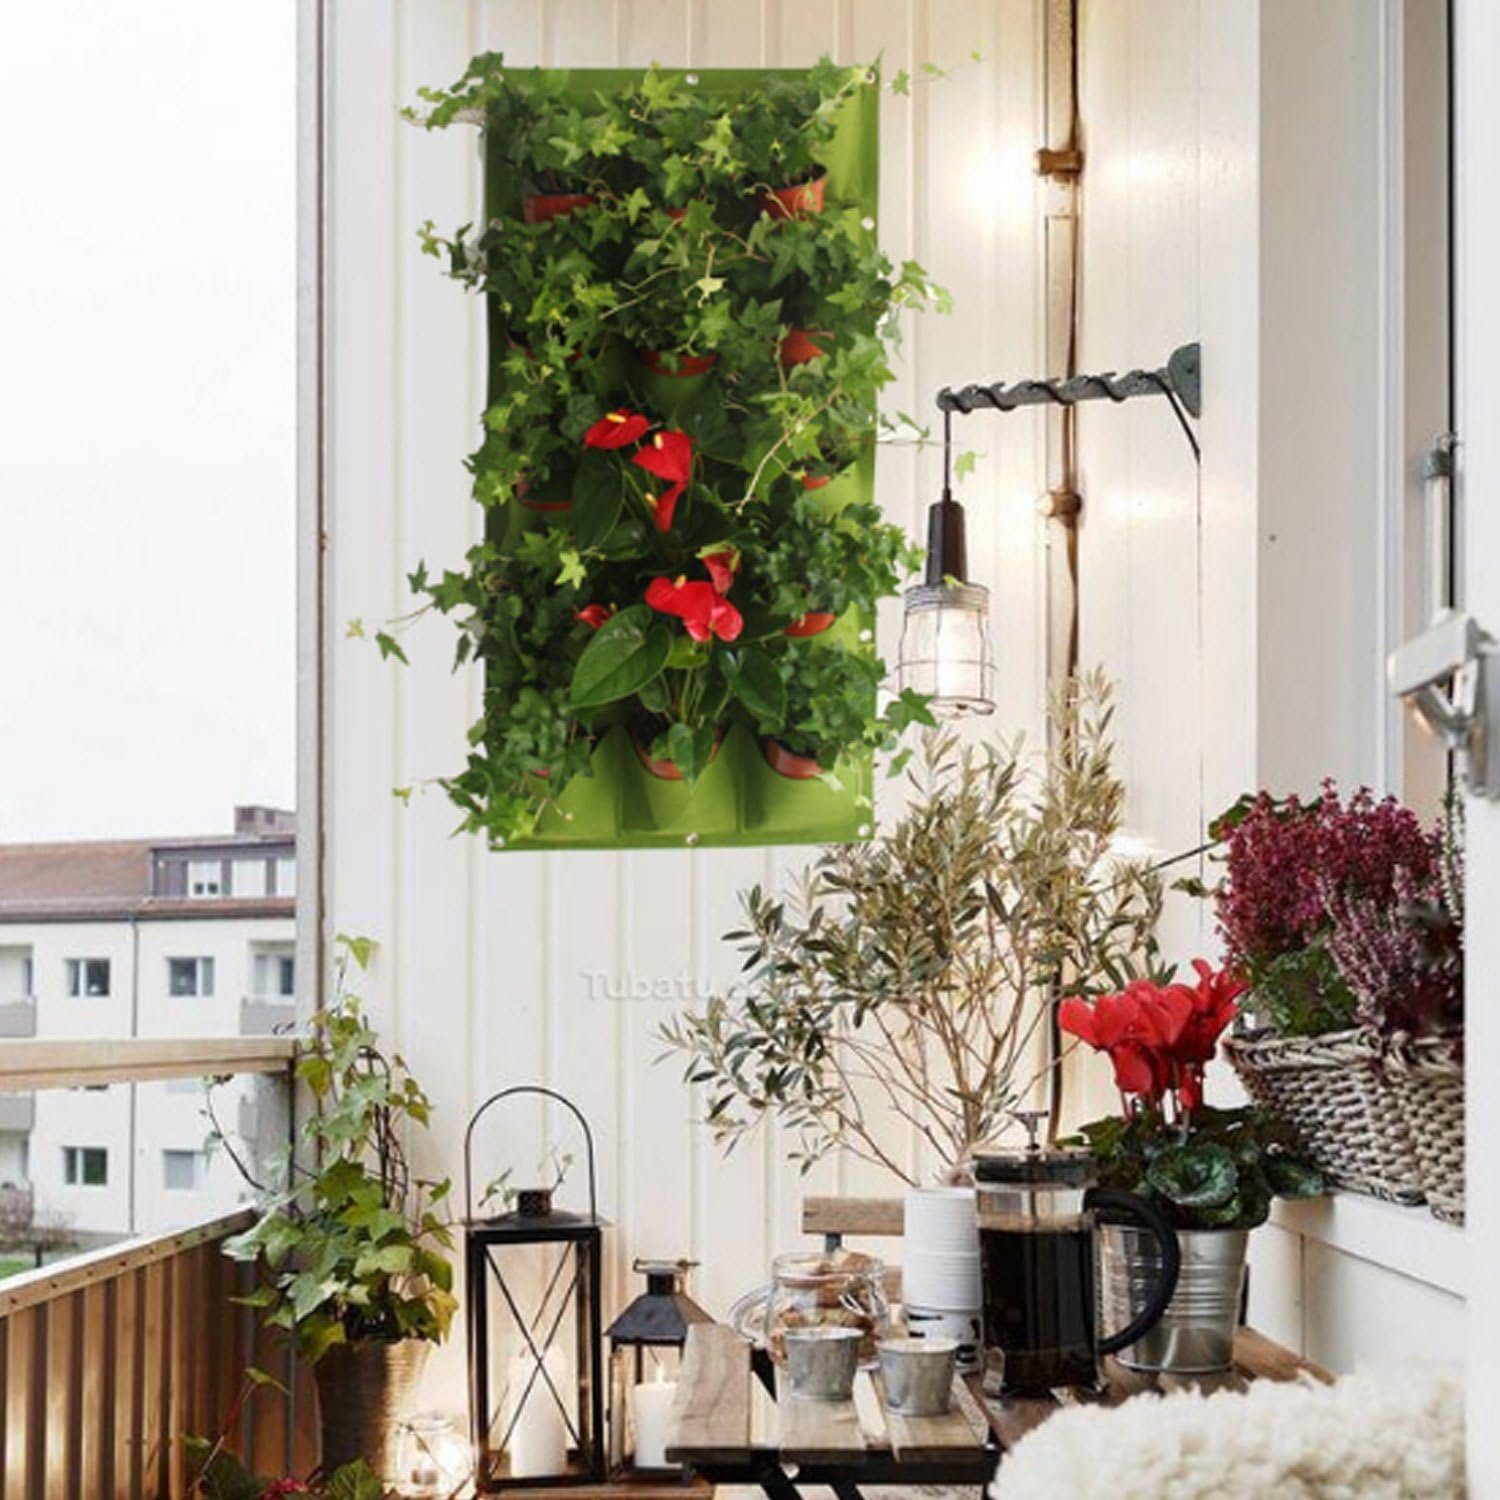 An Pflanzbeutel vertikaler Jormftte Blumentopf,Gartenbedarf hängender Grün1 der Pflanzkübel Wand